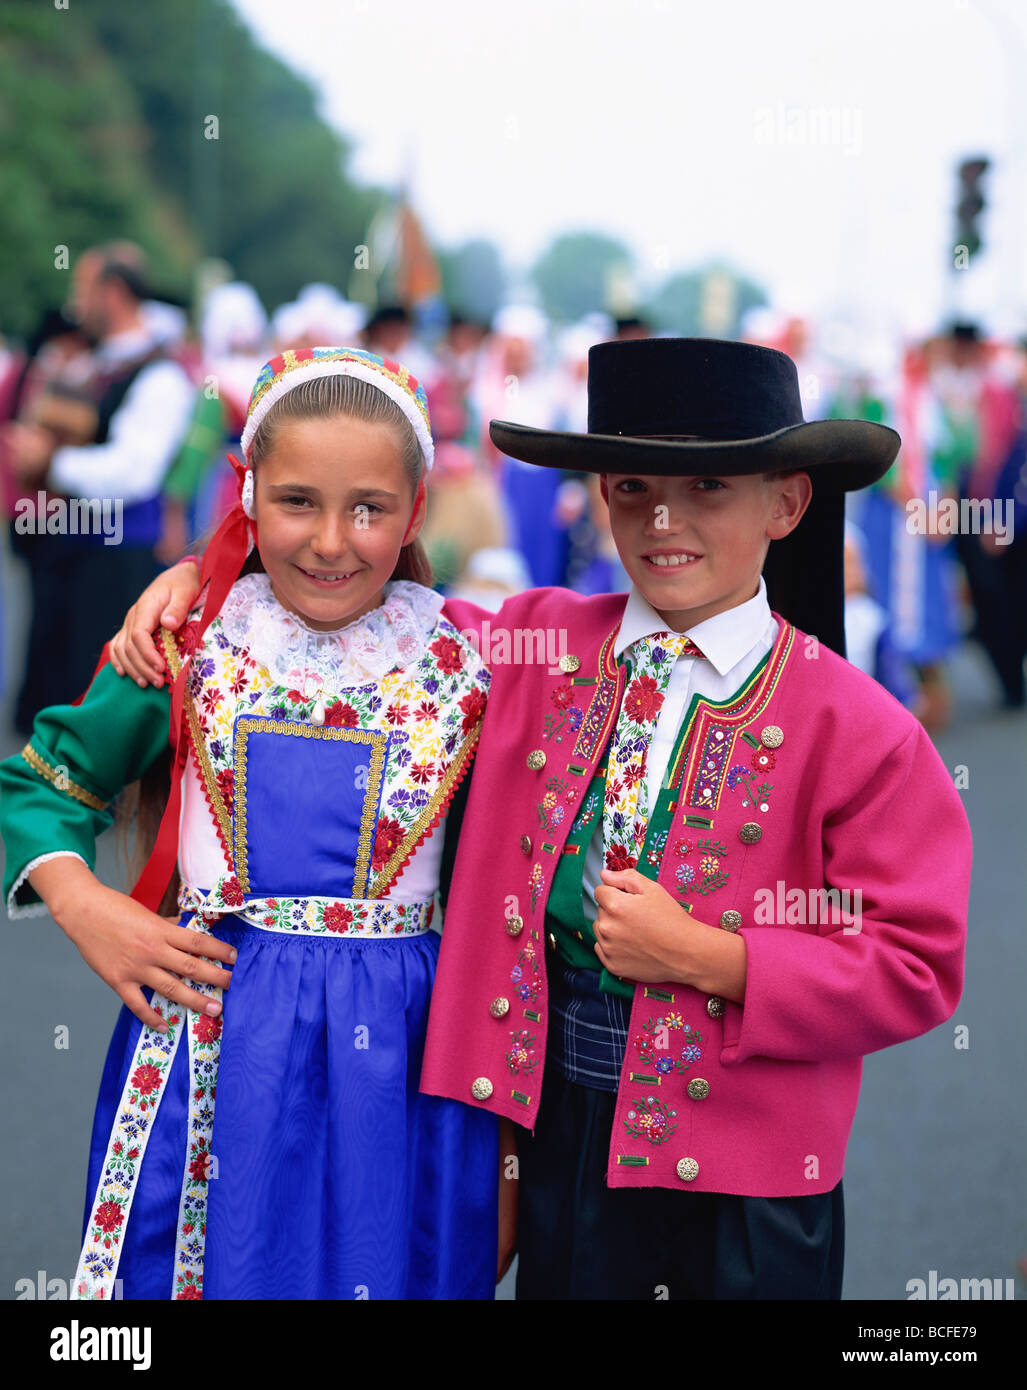 Francia, Bretaña, niños en traje tradicional Fotografía de stock - Alamy